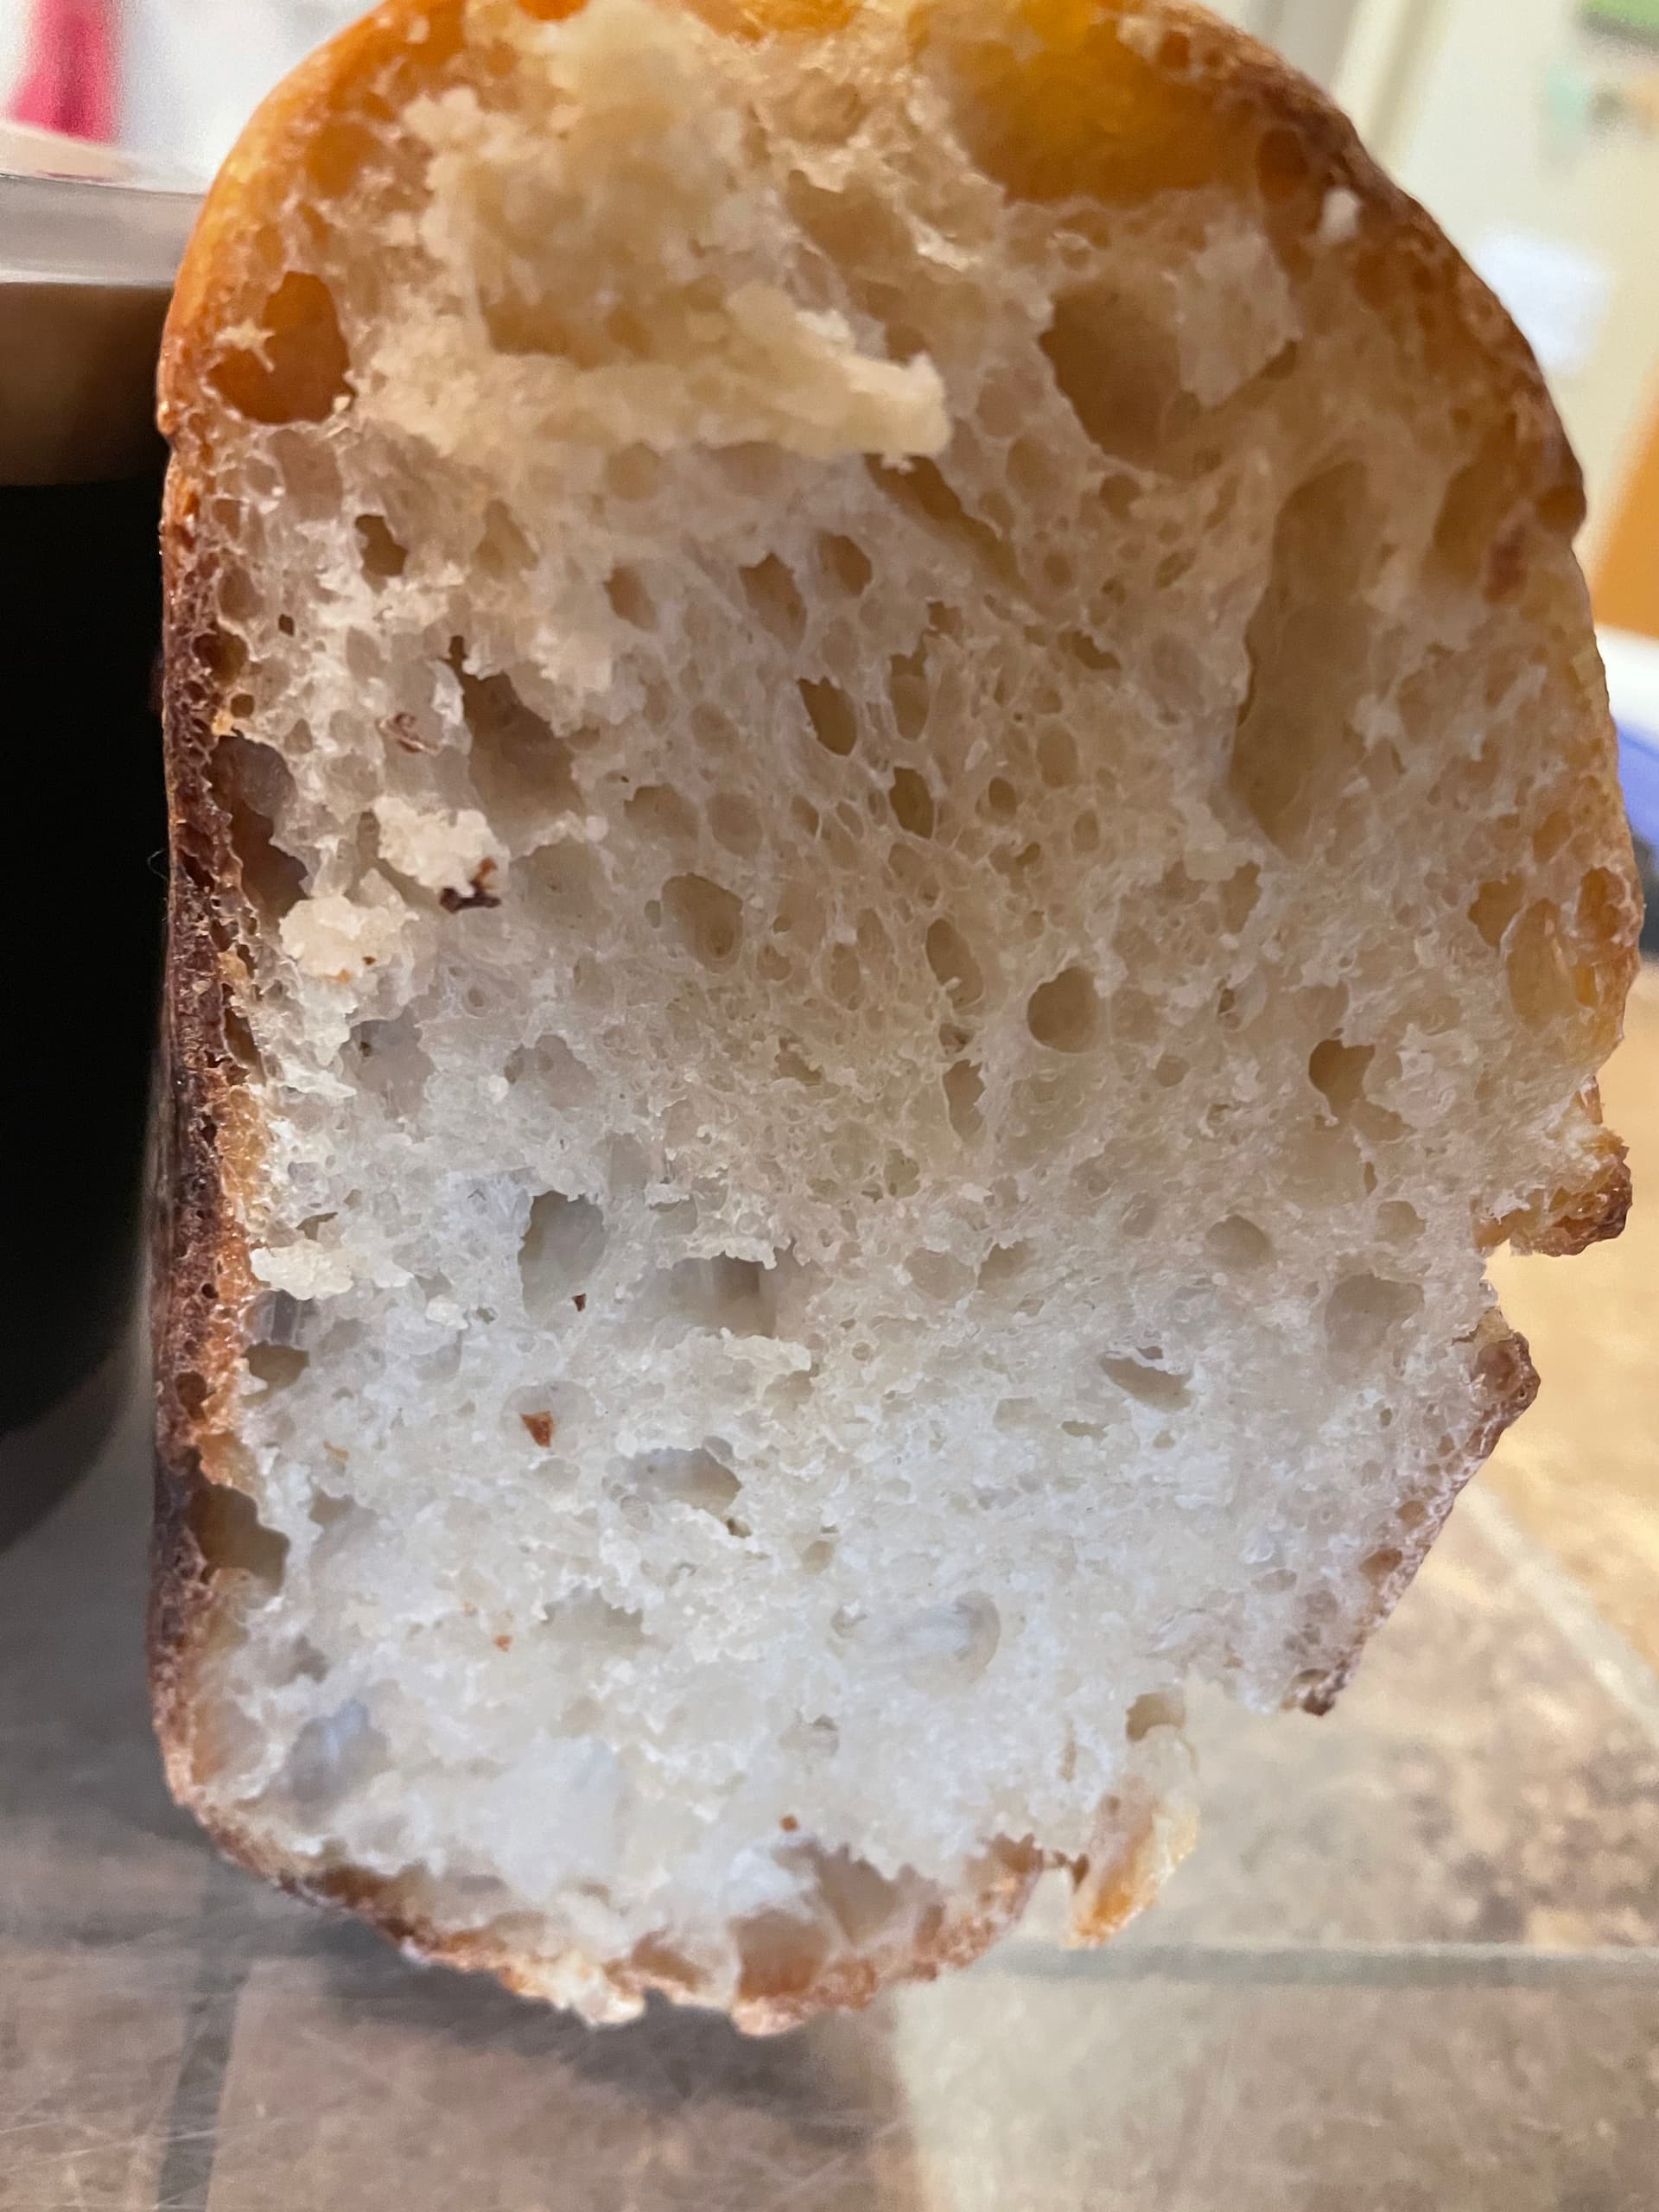 Sourdough Bread finish - Baking Techniques - Breadtopia Forum